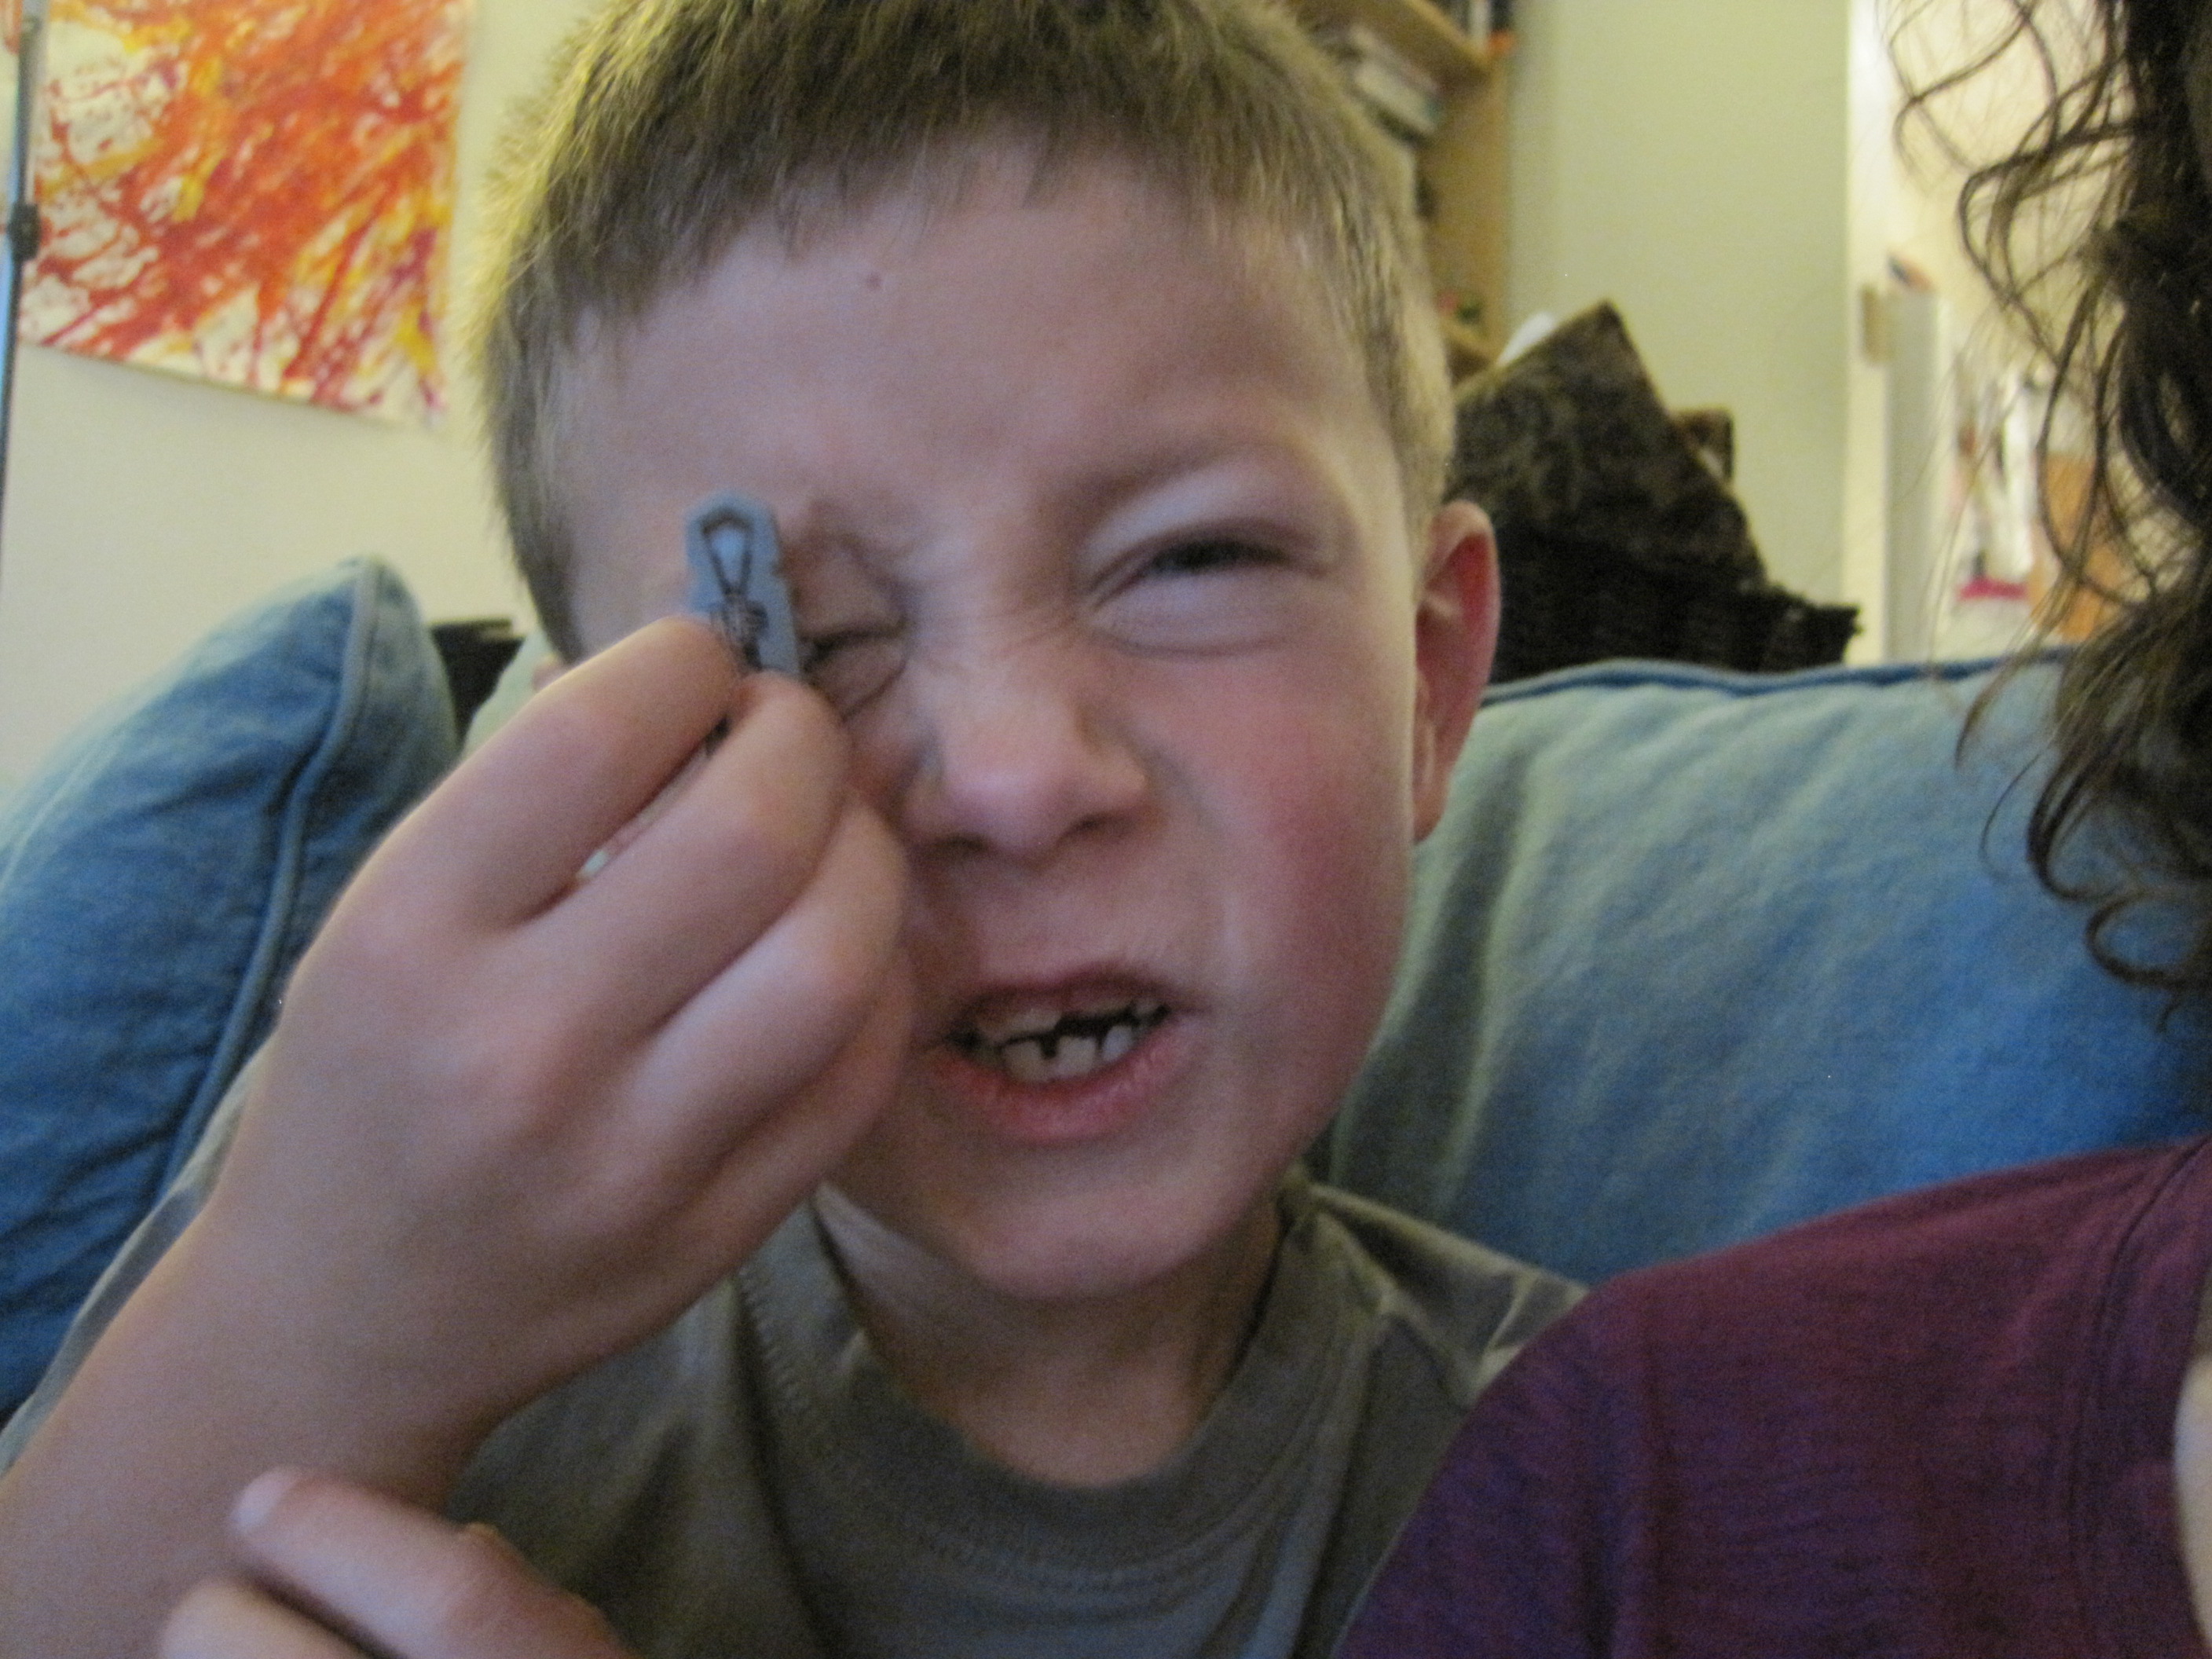 Arlo + hexbug on his eye.